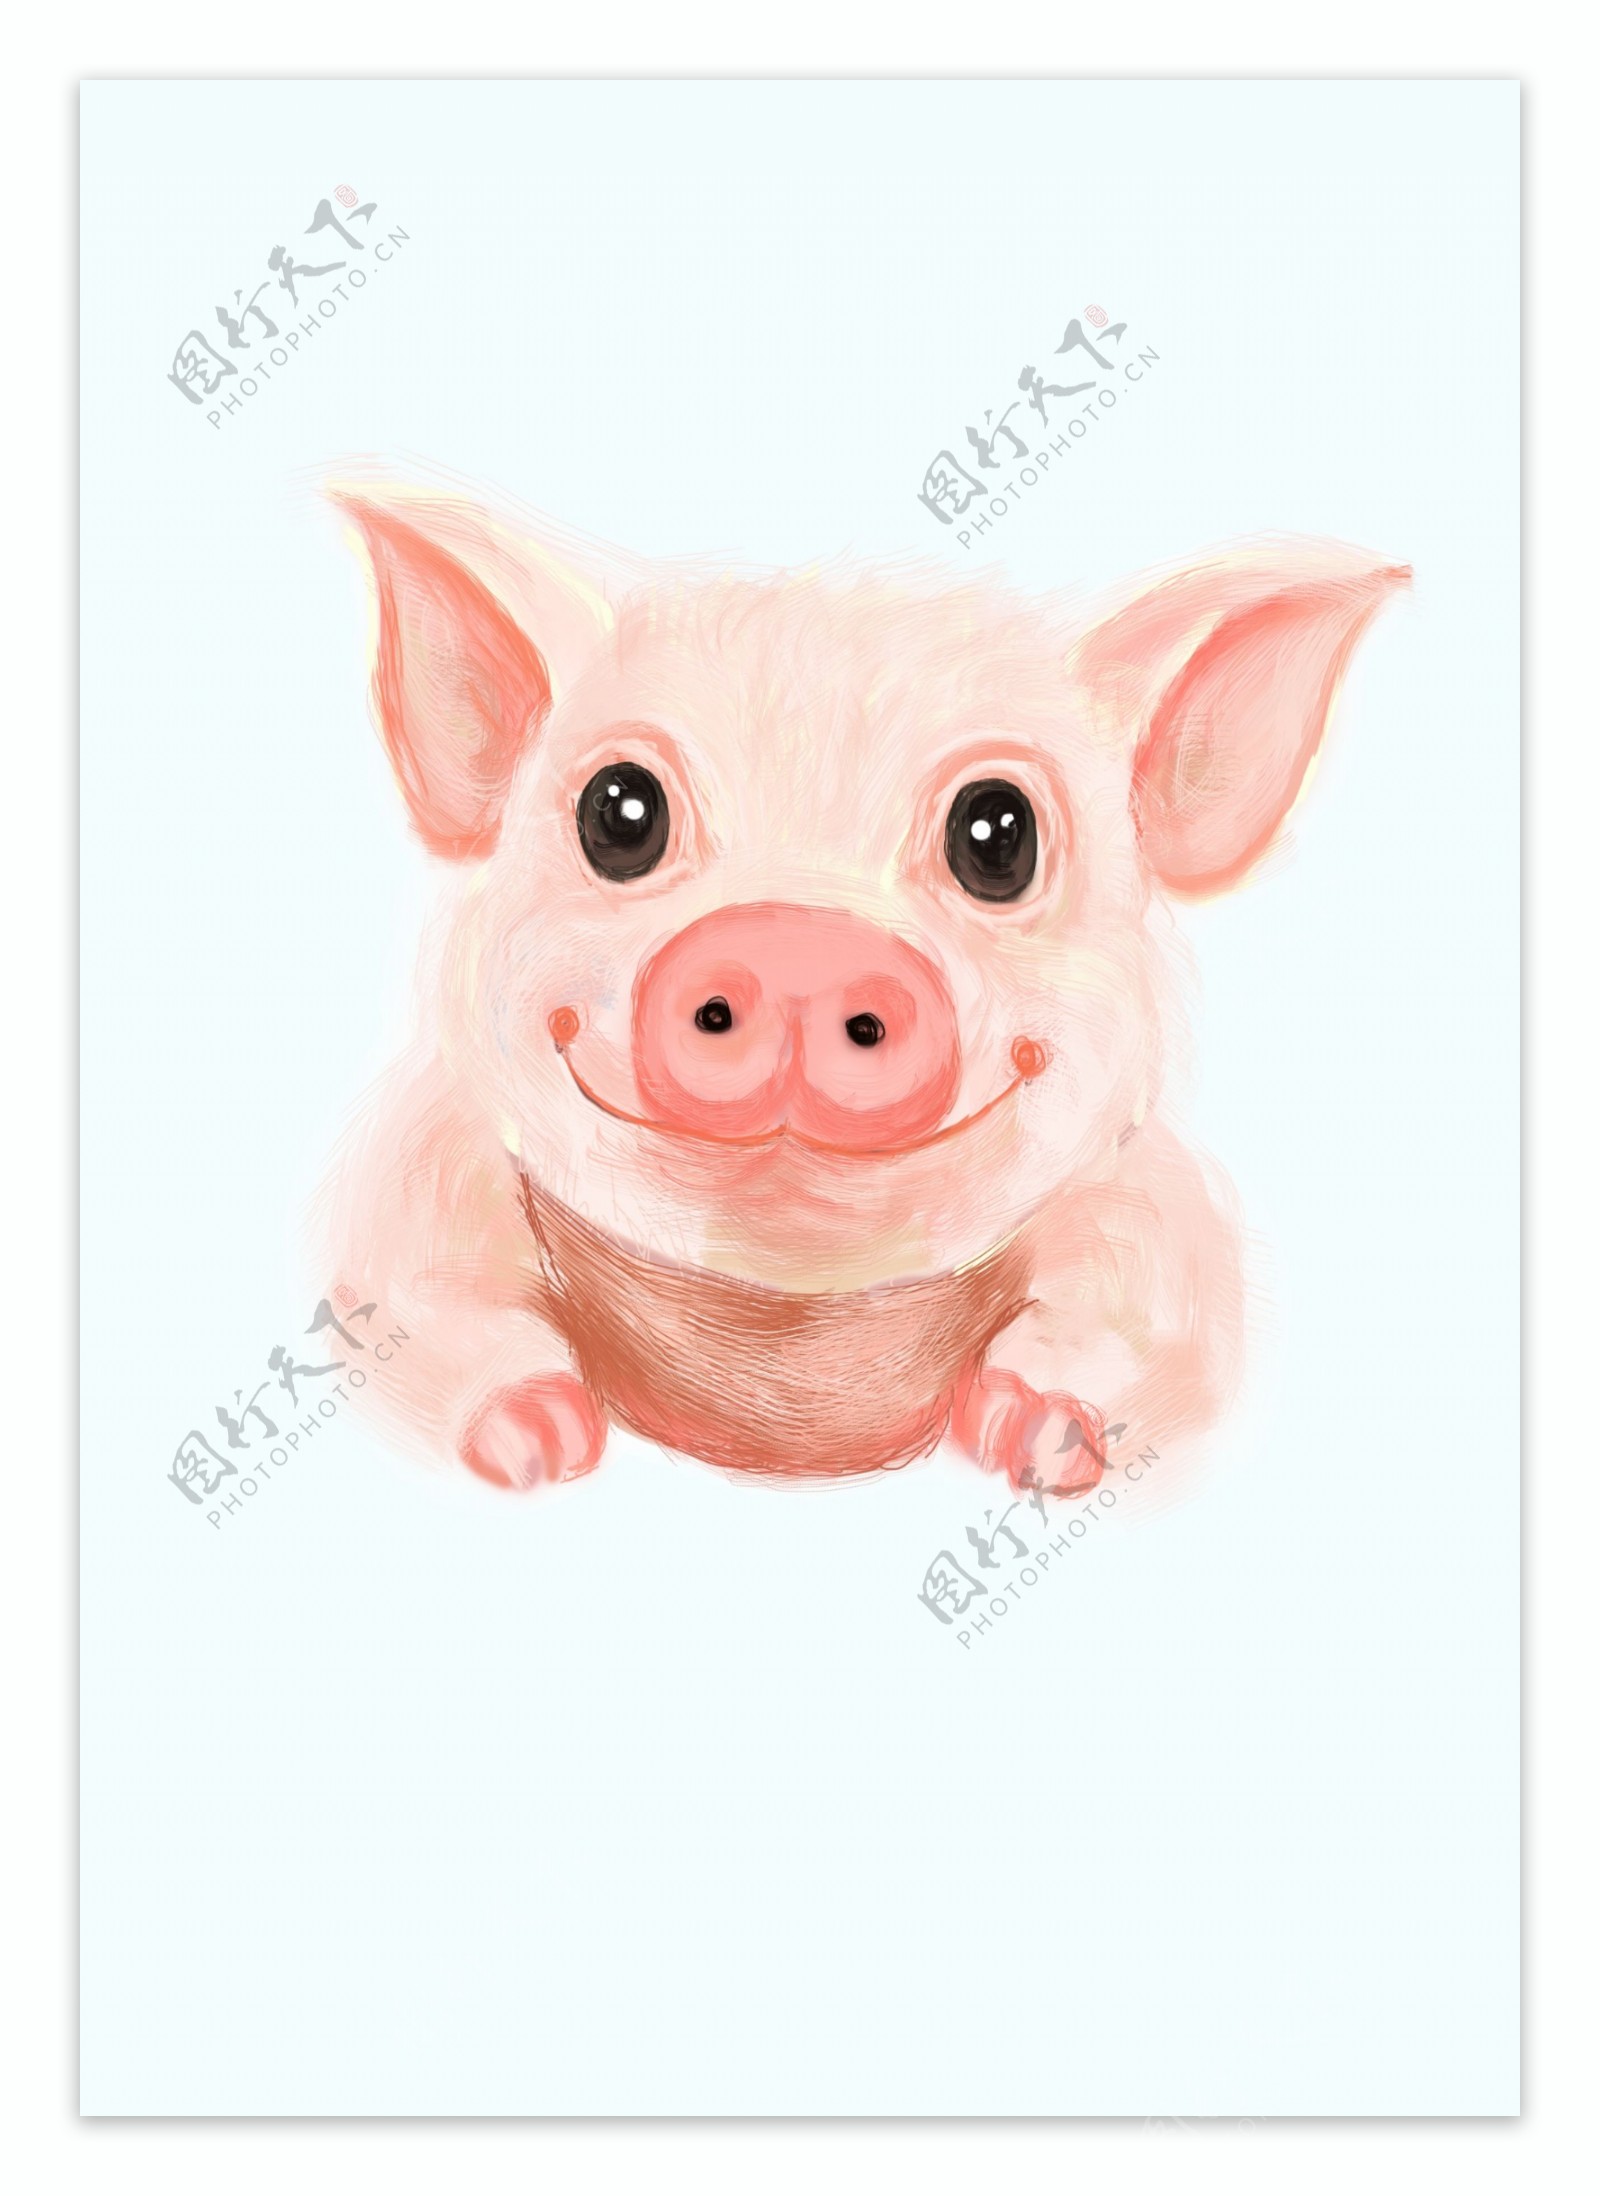 猪年插画手绘素材小猪可爱卡通